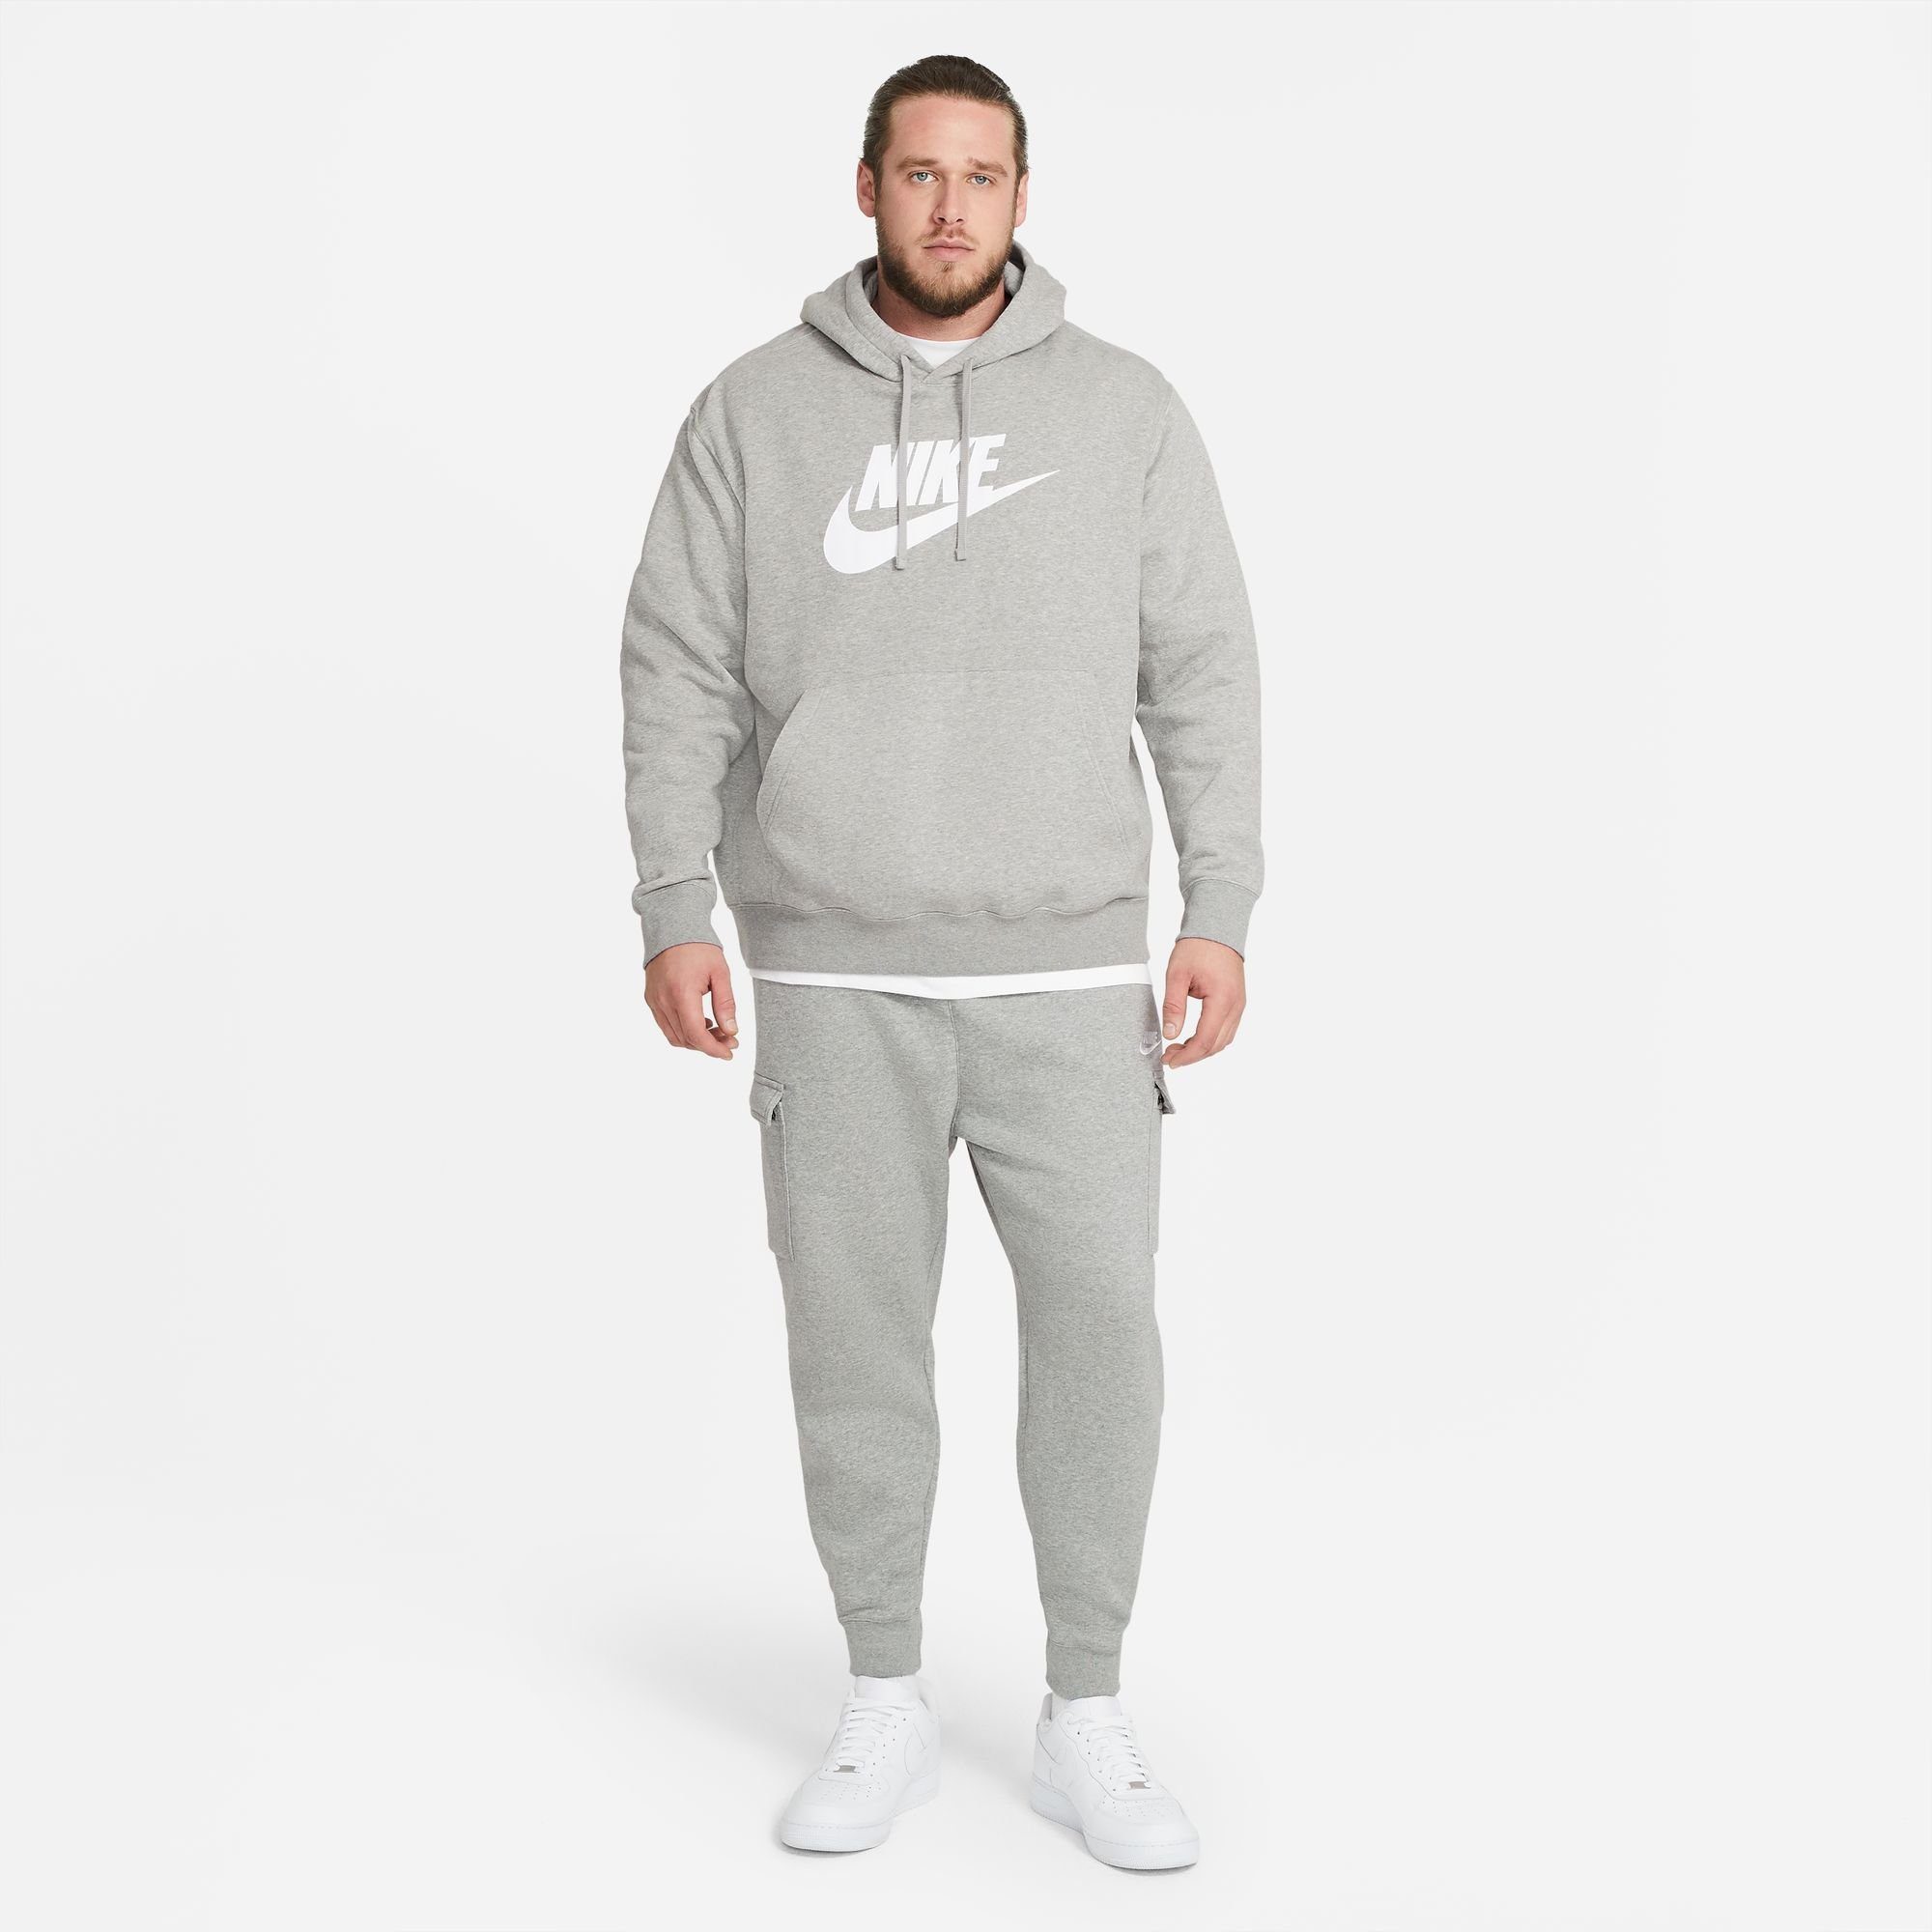 CLUB PANTS CARGO Sportswear Jogginghose hellgrau-meliert FLEECE MEN'S Nike